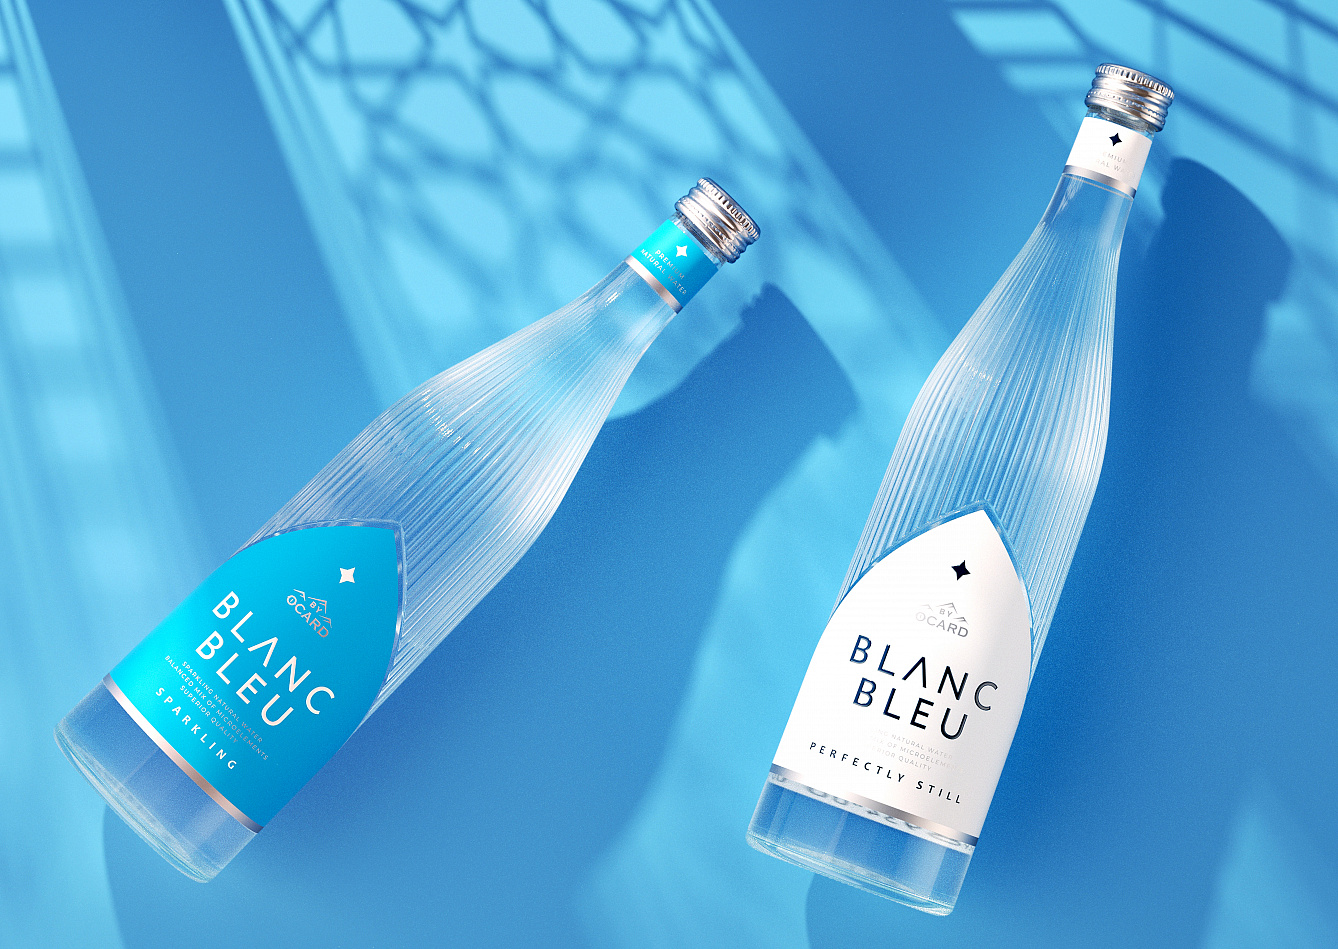 BLANC BLEU: нейминг, дизайн и форма упаковки бутилированной воды - Портфолио Depot